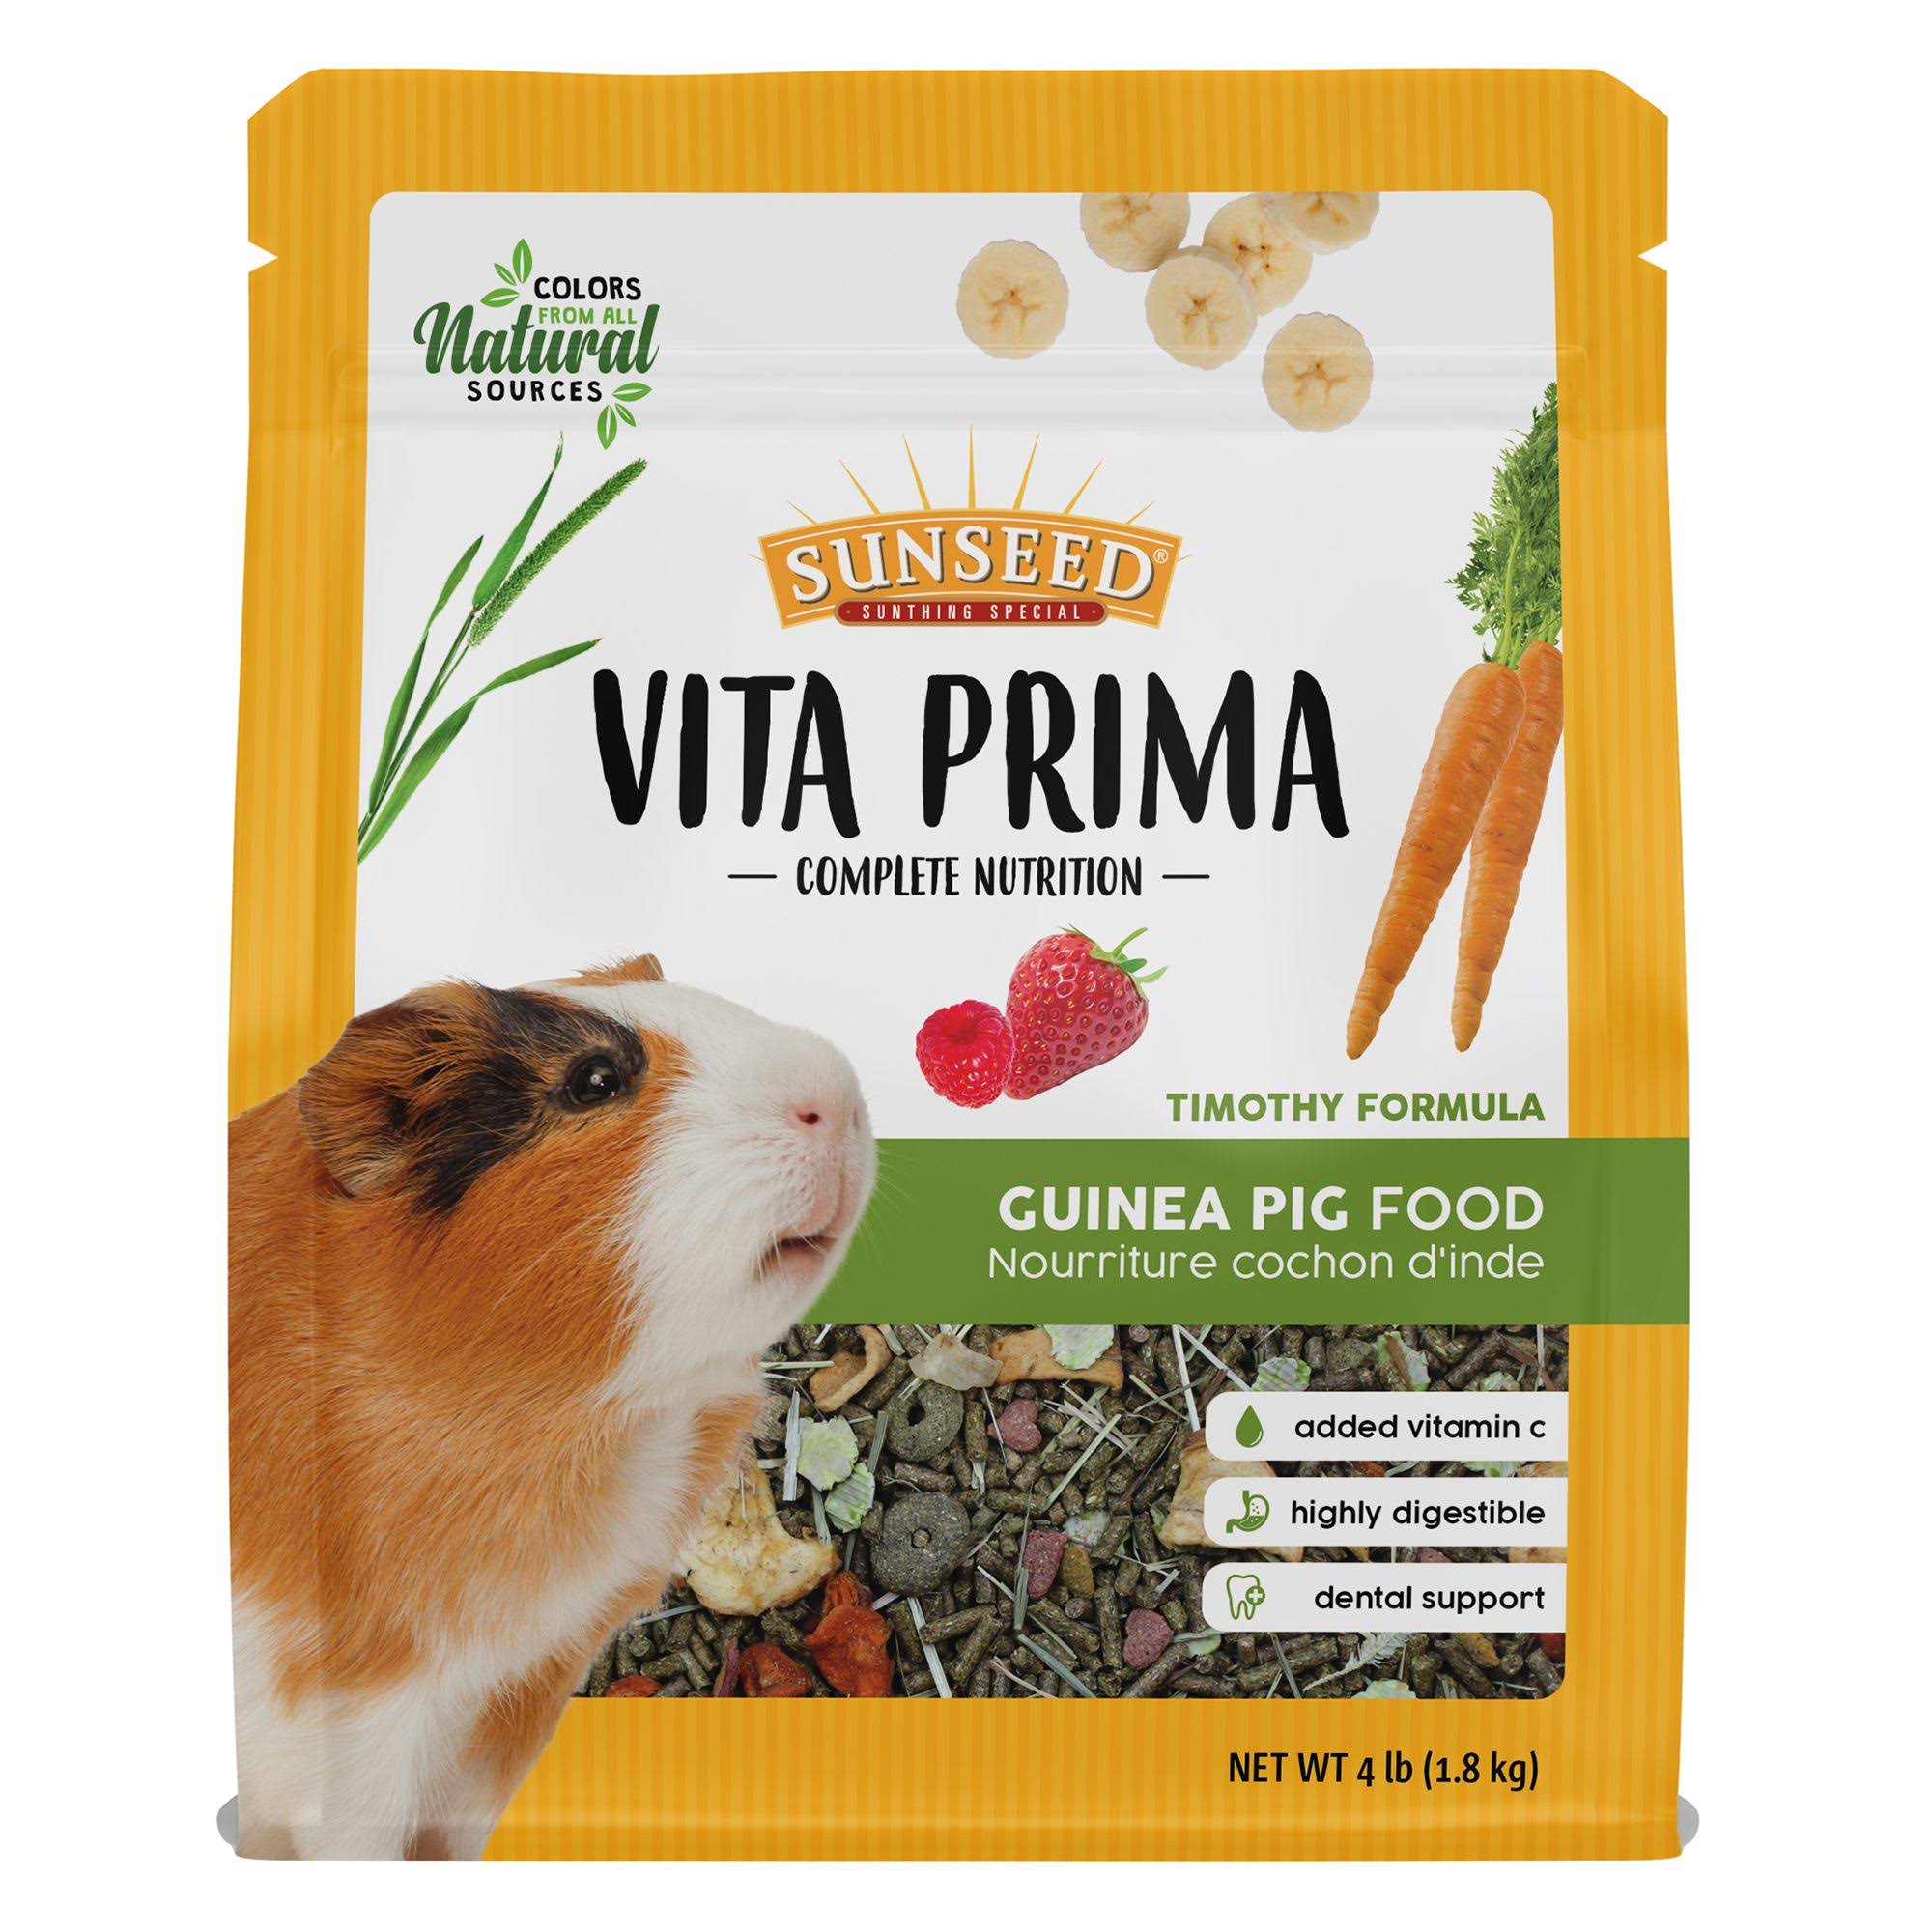 Sunseed 59770 Vita Prima Complete Nutrition Pelleted Guinea Pig Food, 4 lb. Bag